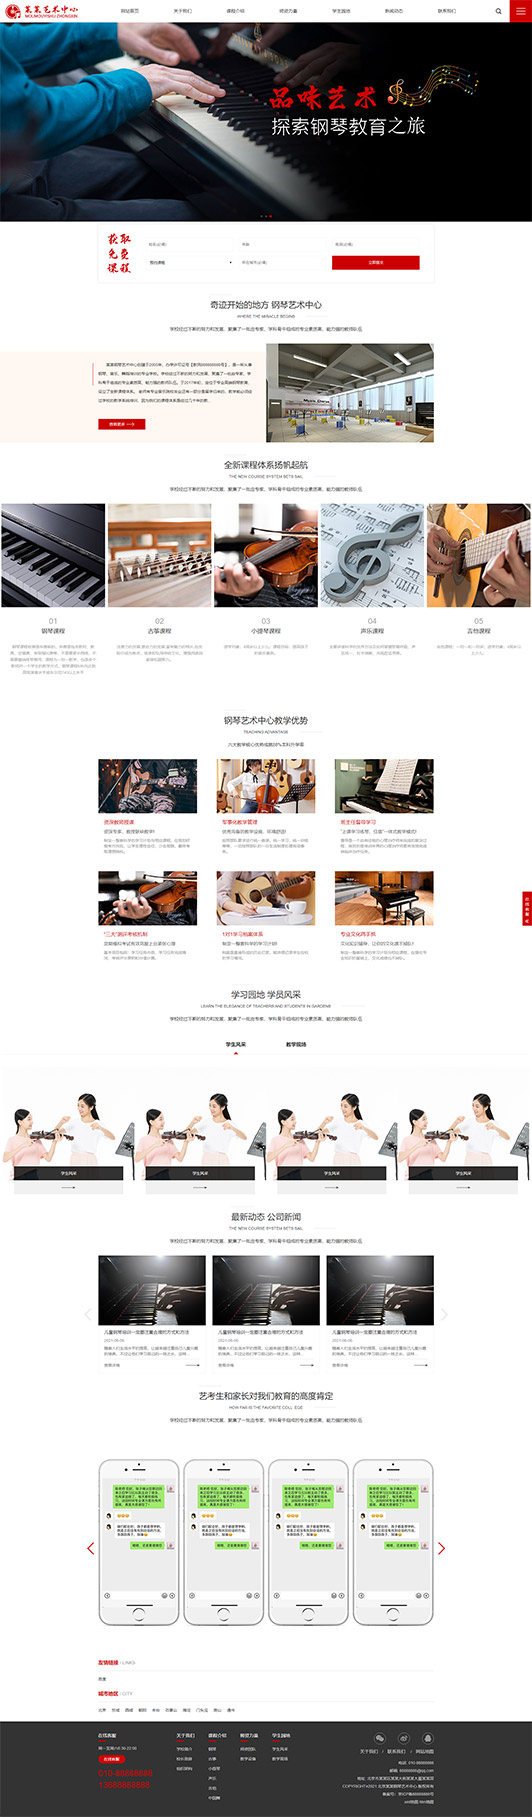 兰州钢琴艺术培训公司响应式企业网站